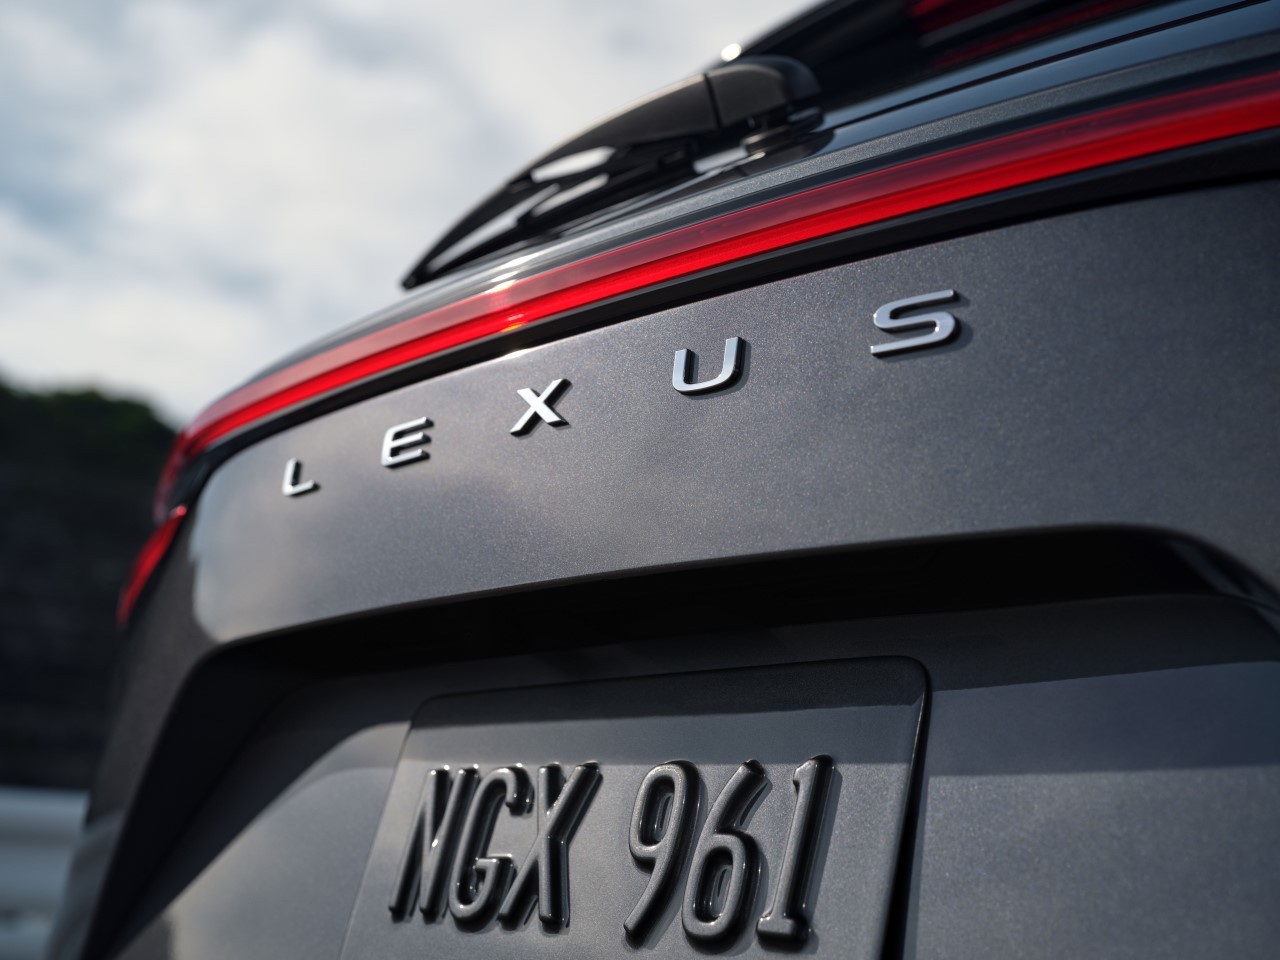 Lexus (częściowo) żegna się ze swoim logo?